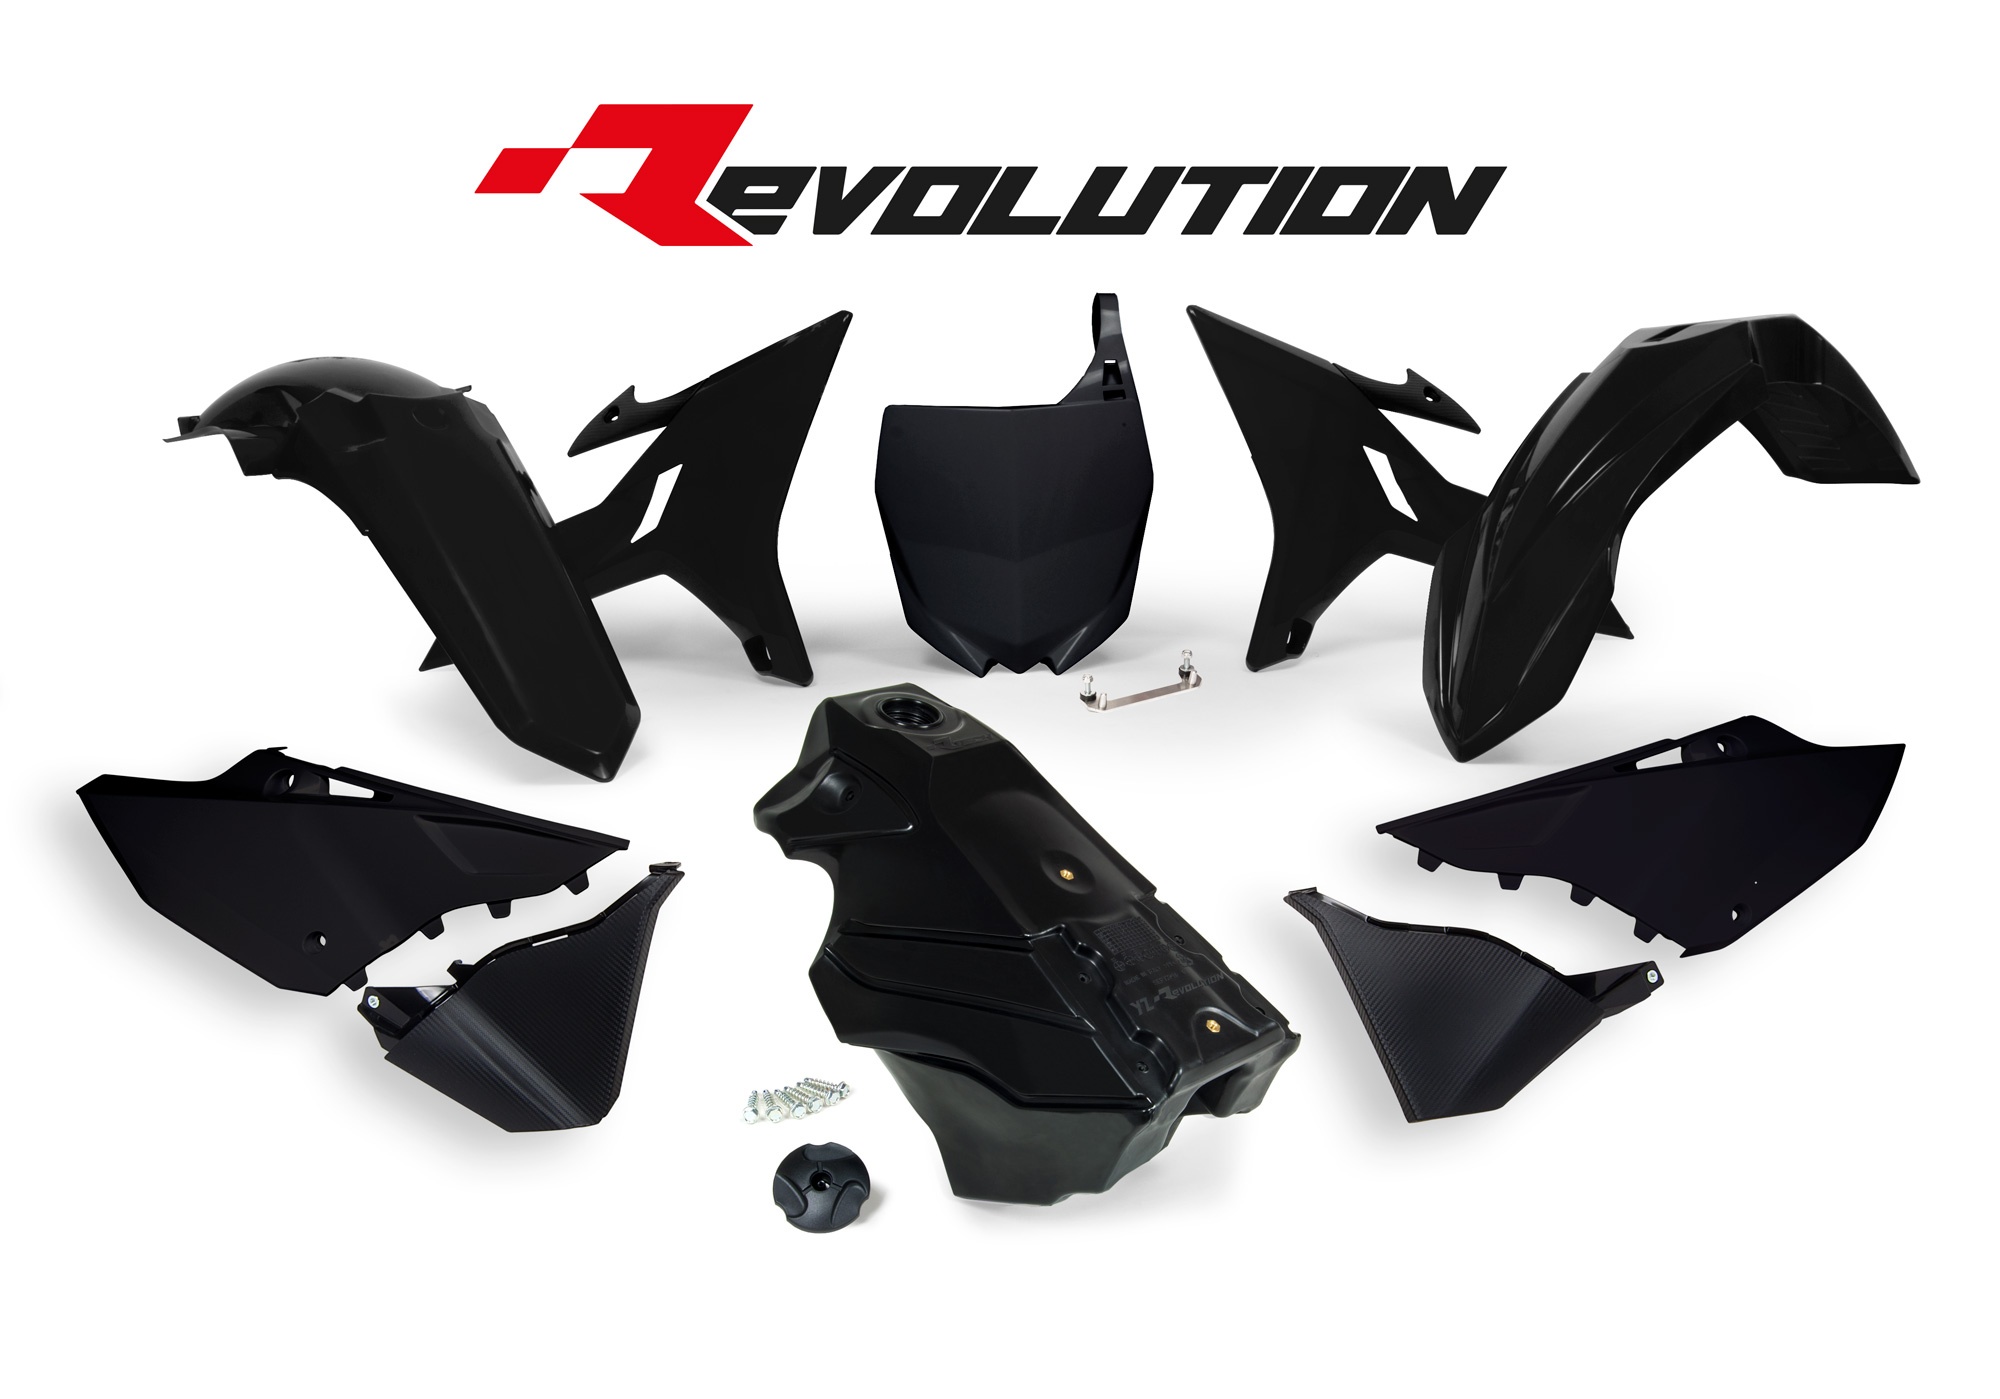 Obrázek produktu sada plastů Yamaha - REVOLUTION KIT pro YZ 125/250 02-21, RTECH (černá, 7 dílů)